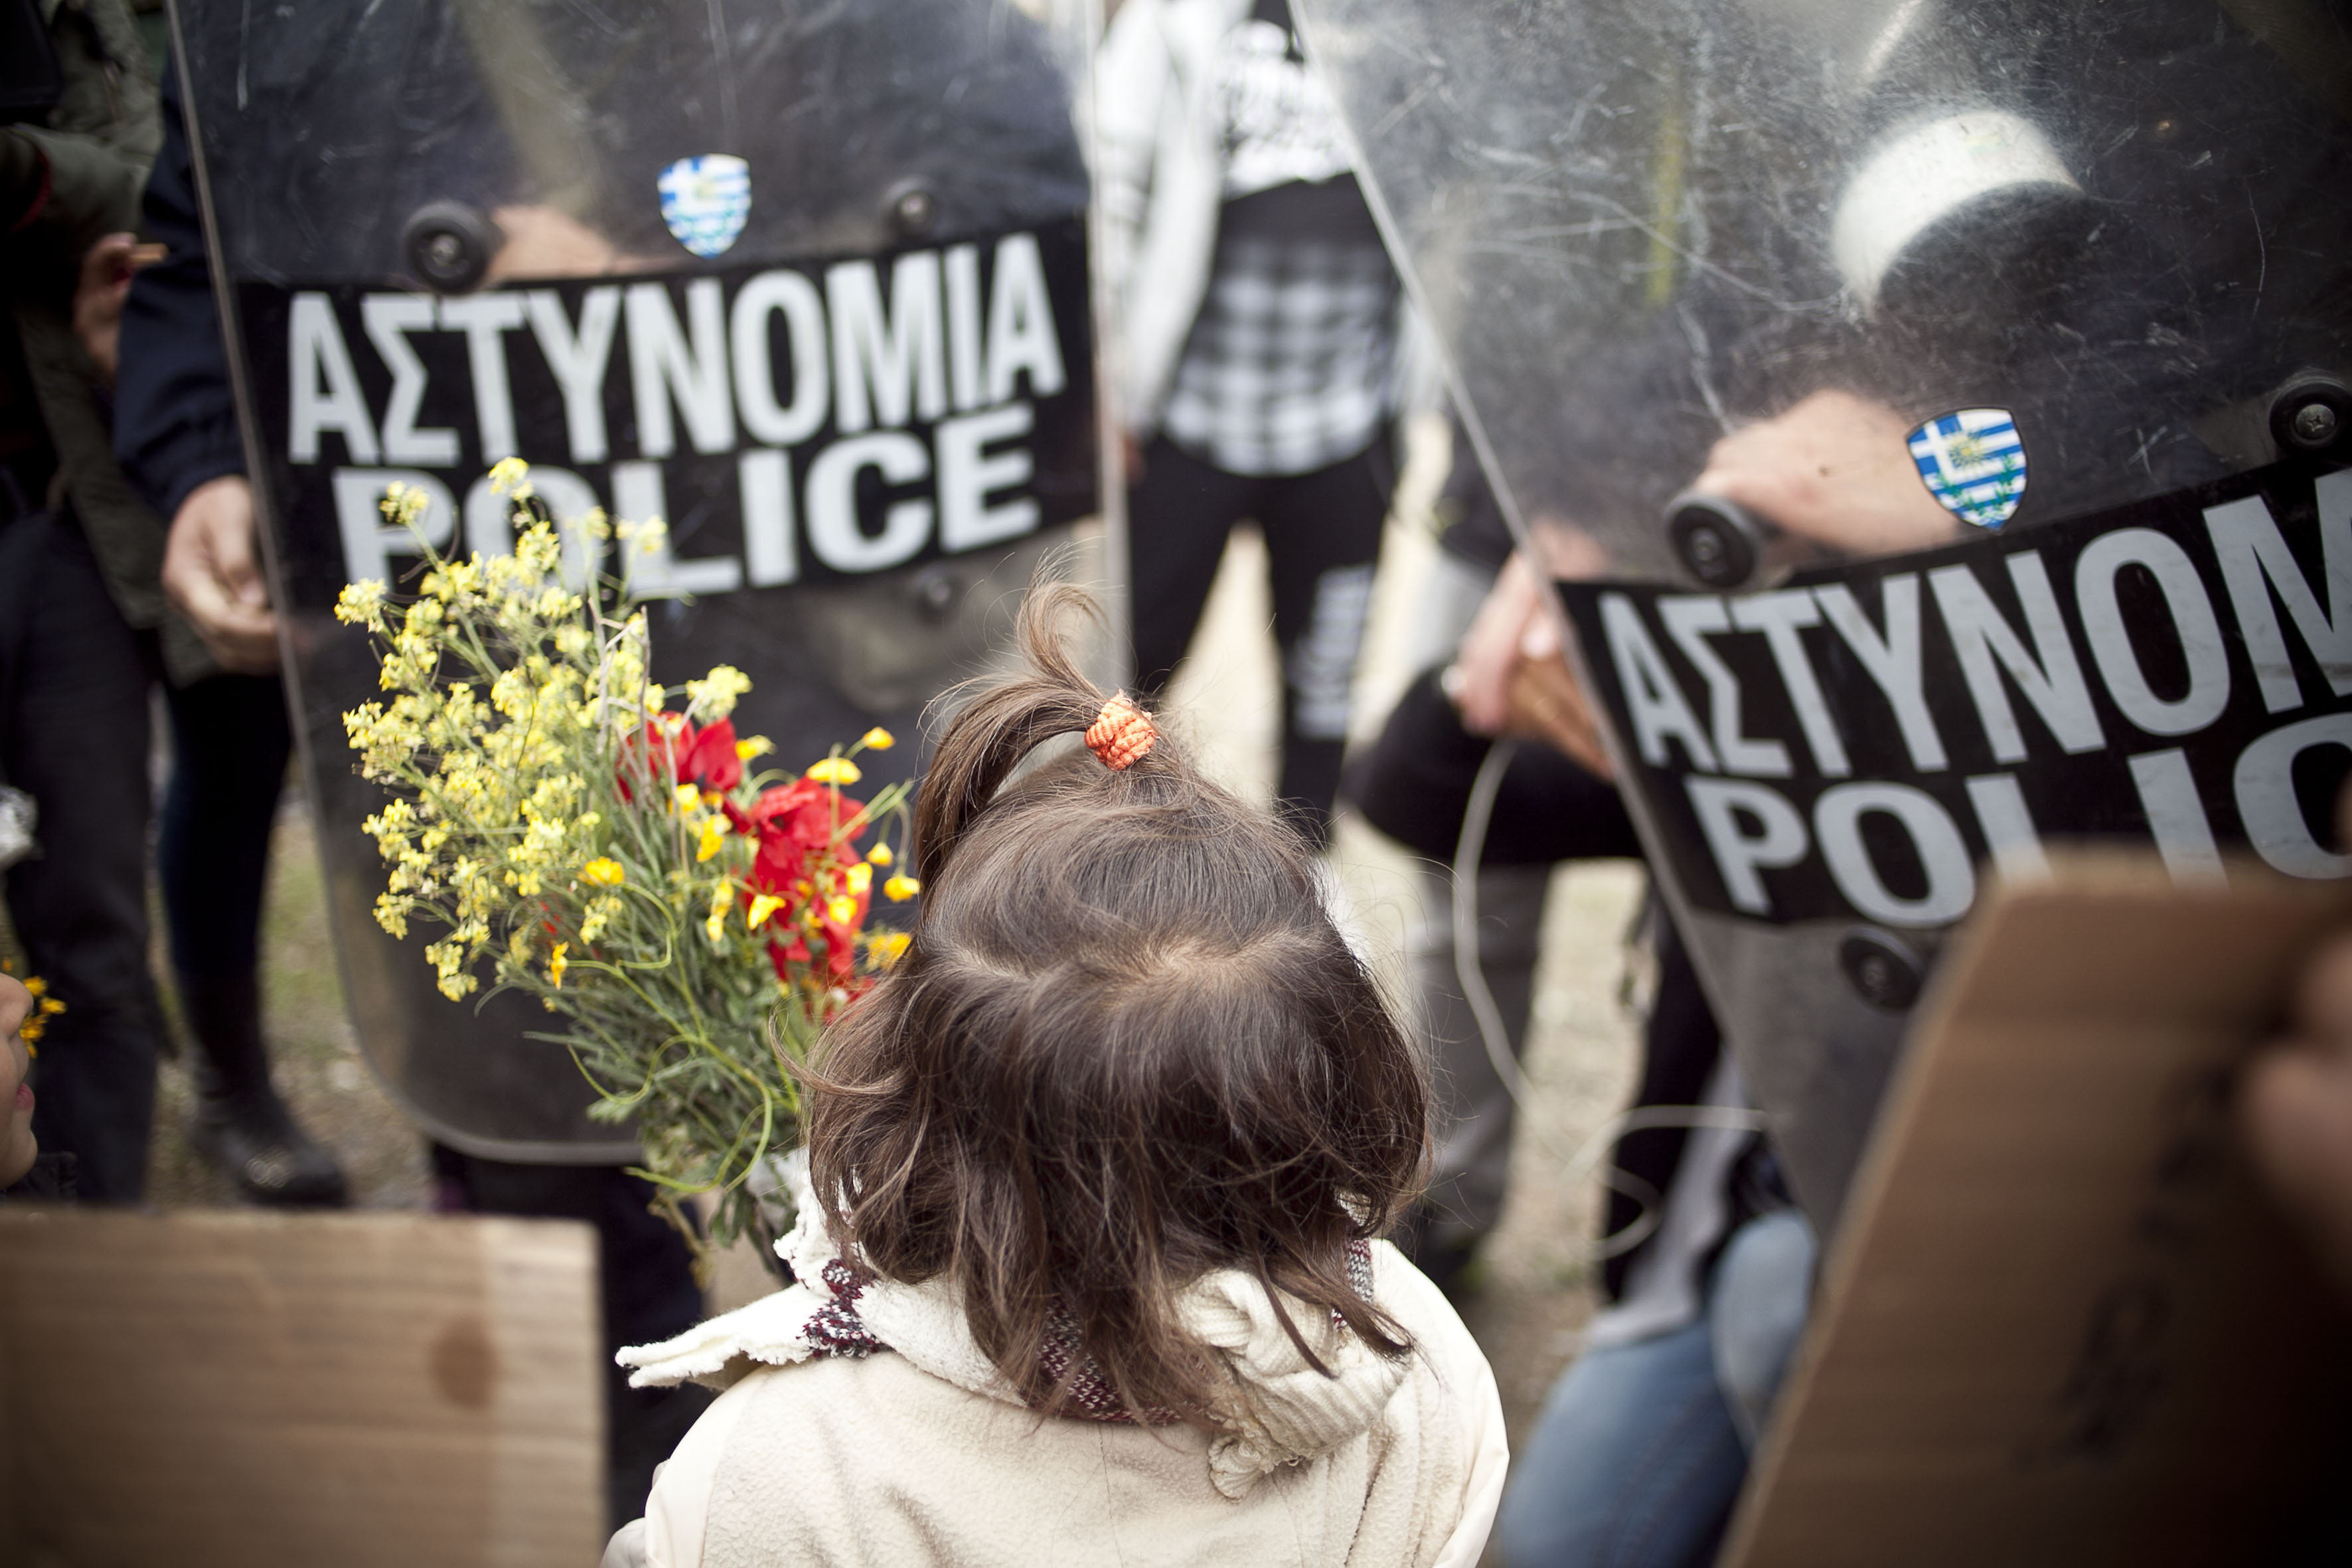 Vluchtelingenprotest in Griekenland loopt op niets uit. ‘Is dit nu Europa? Is dit democratie?’ 